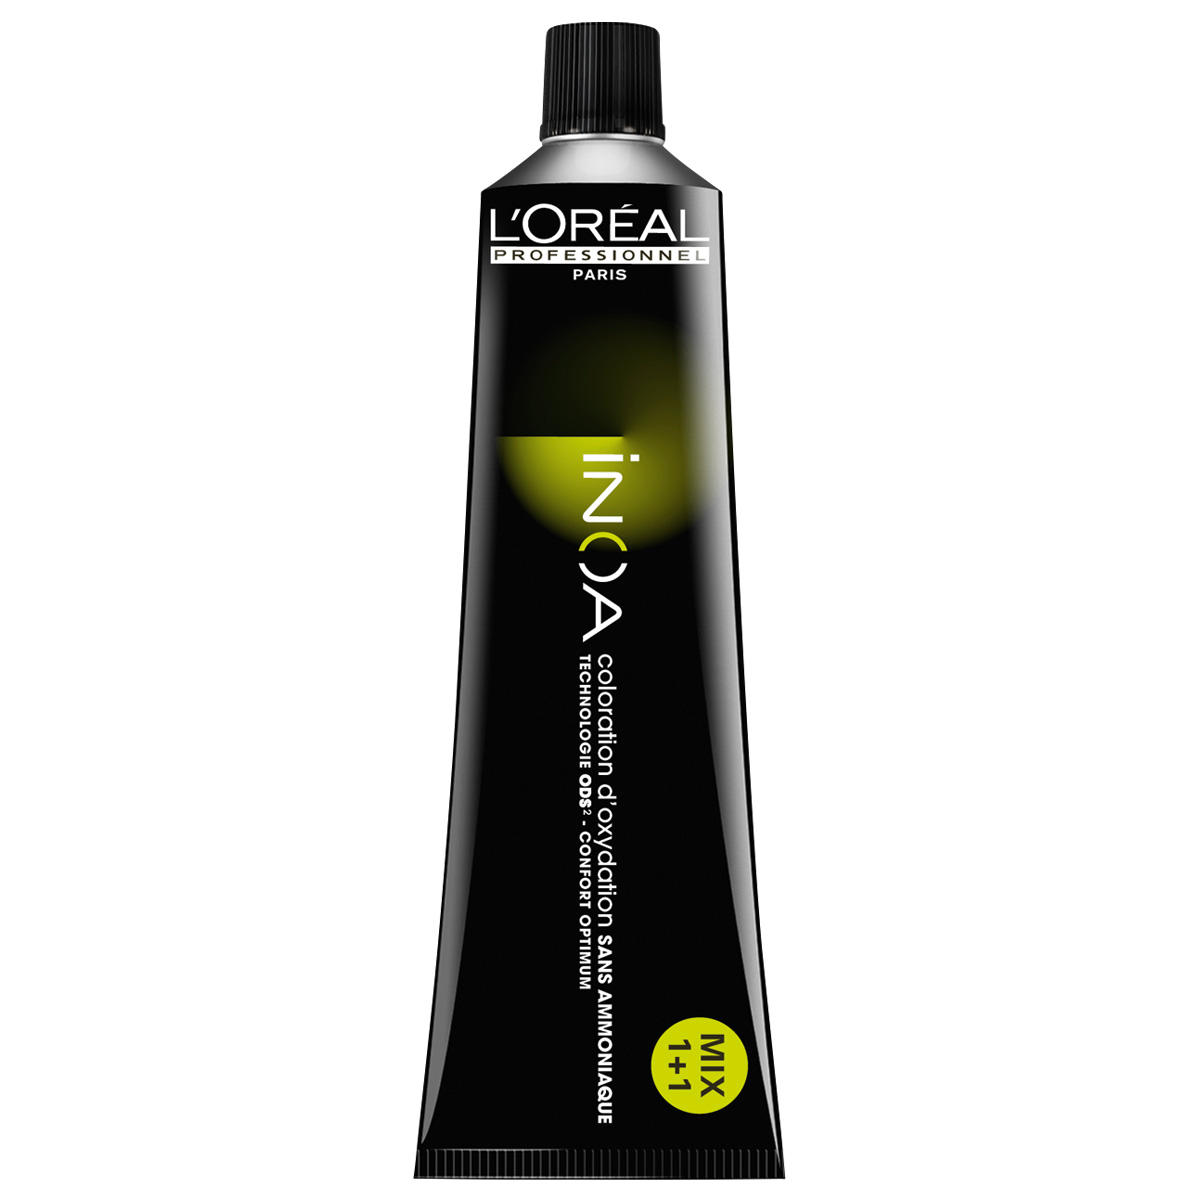 L'Oréal Professionnel Paris Coloration 5.8 Light Brown Mocha, Tube 60 ml - 1